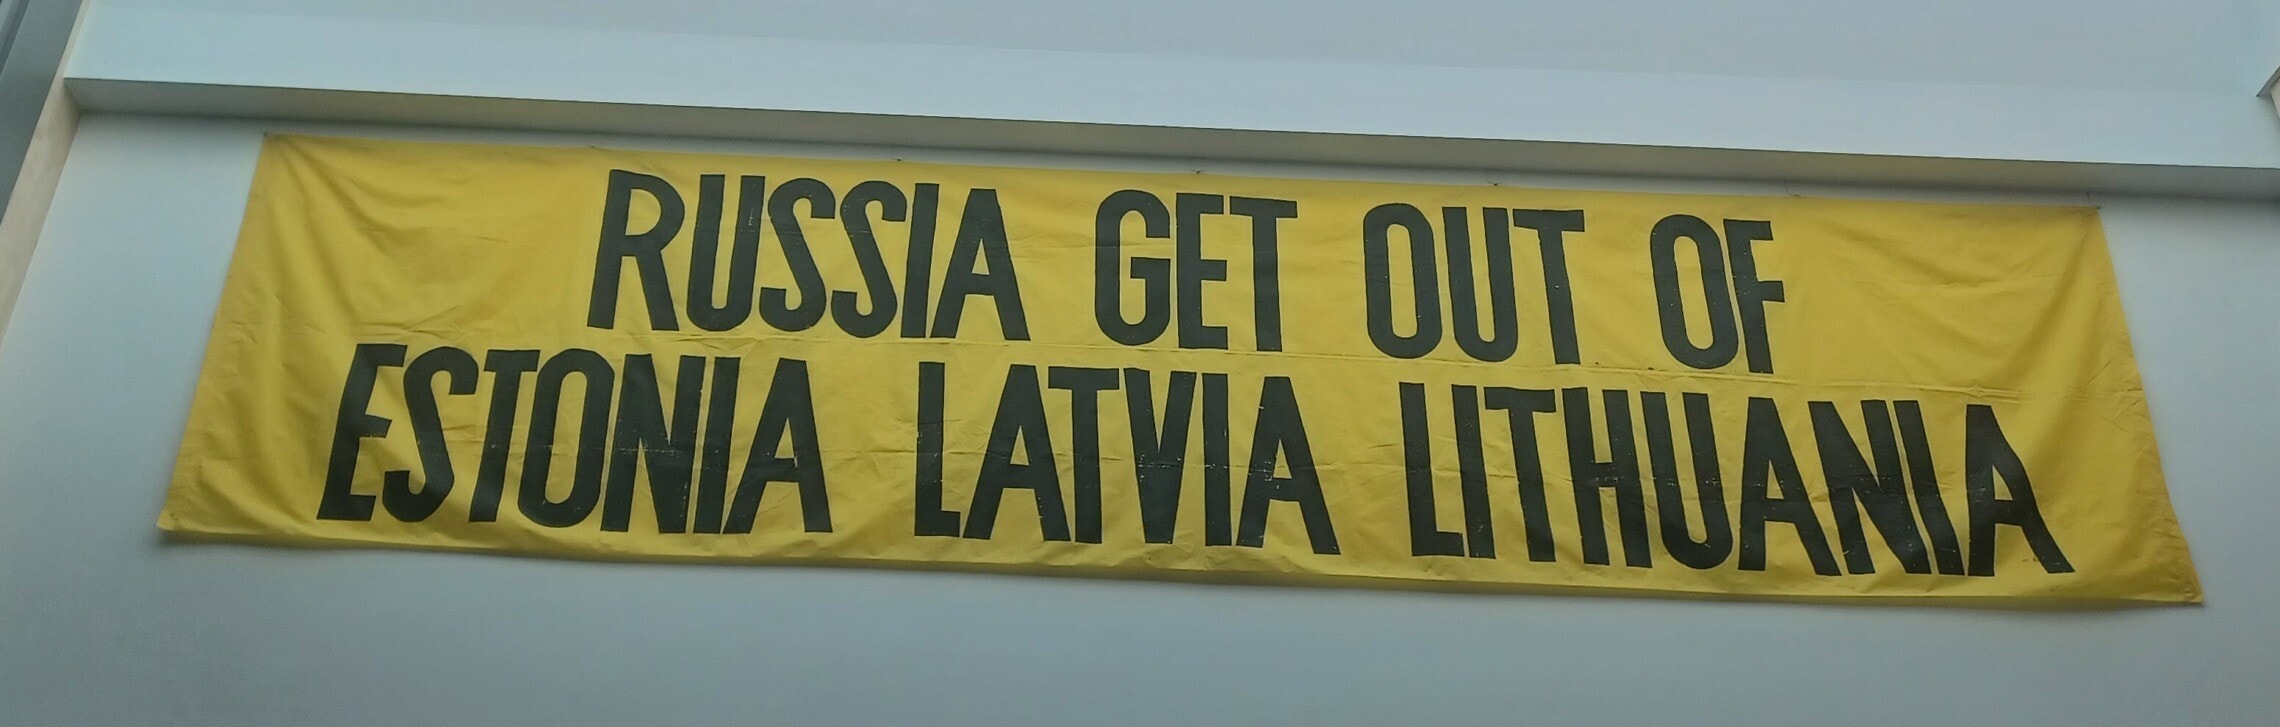 כרזה משנות ה־80 נגד רוסיה, מוזיאון הכיבוש, ריגה, לטביה (צילום: שאול אדר)